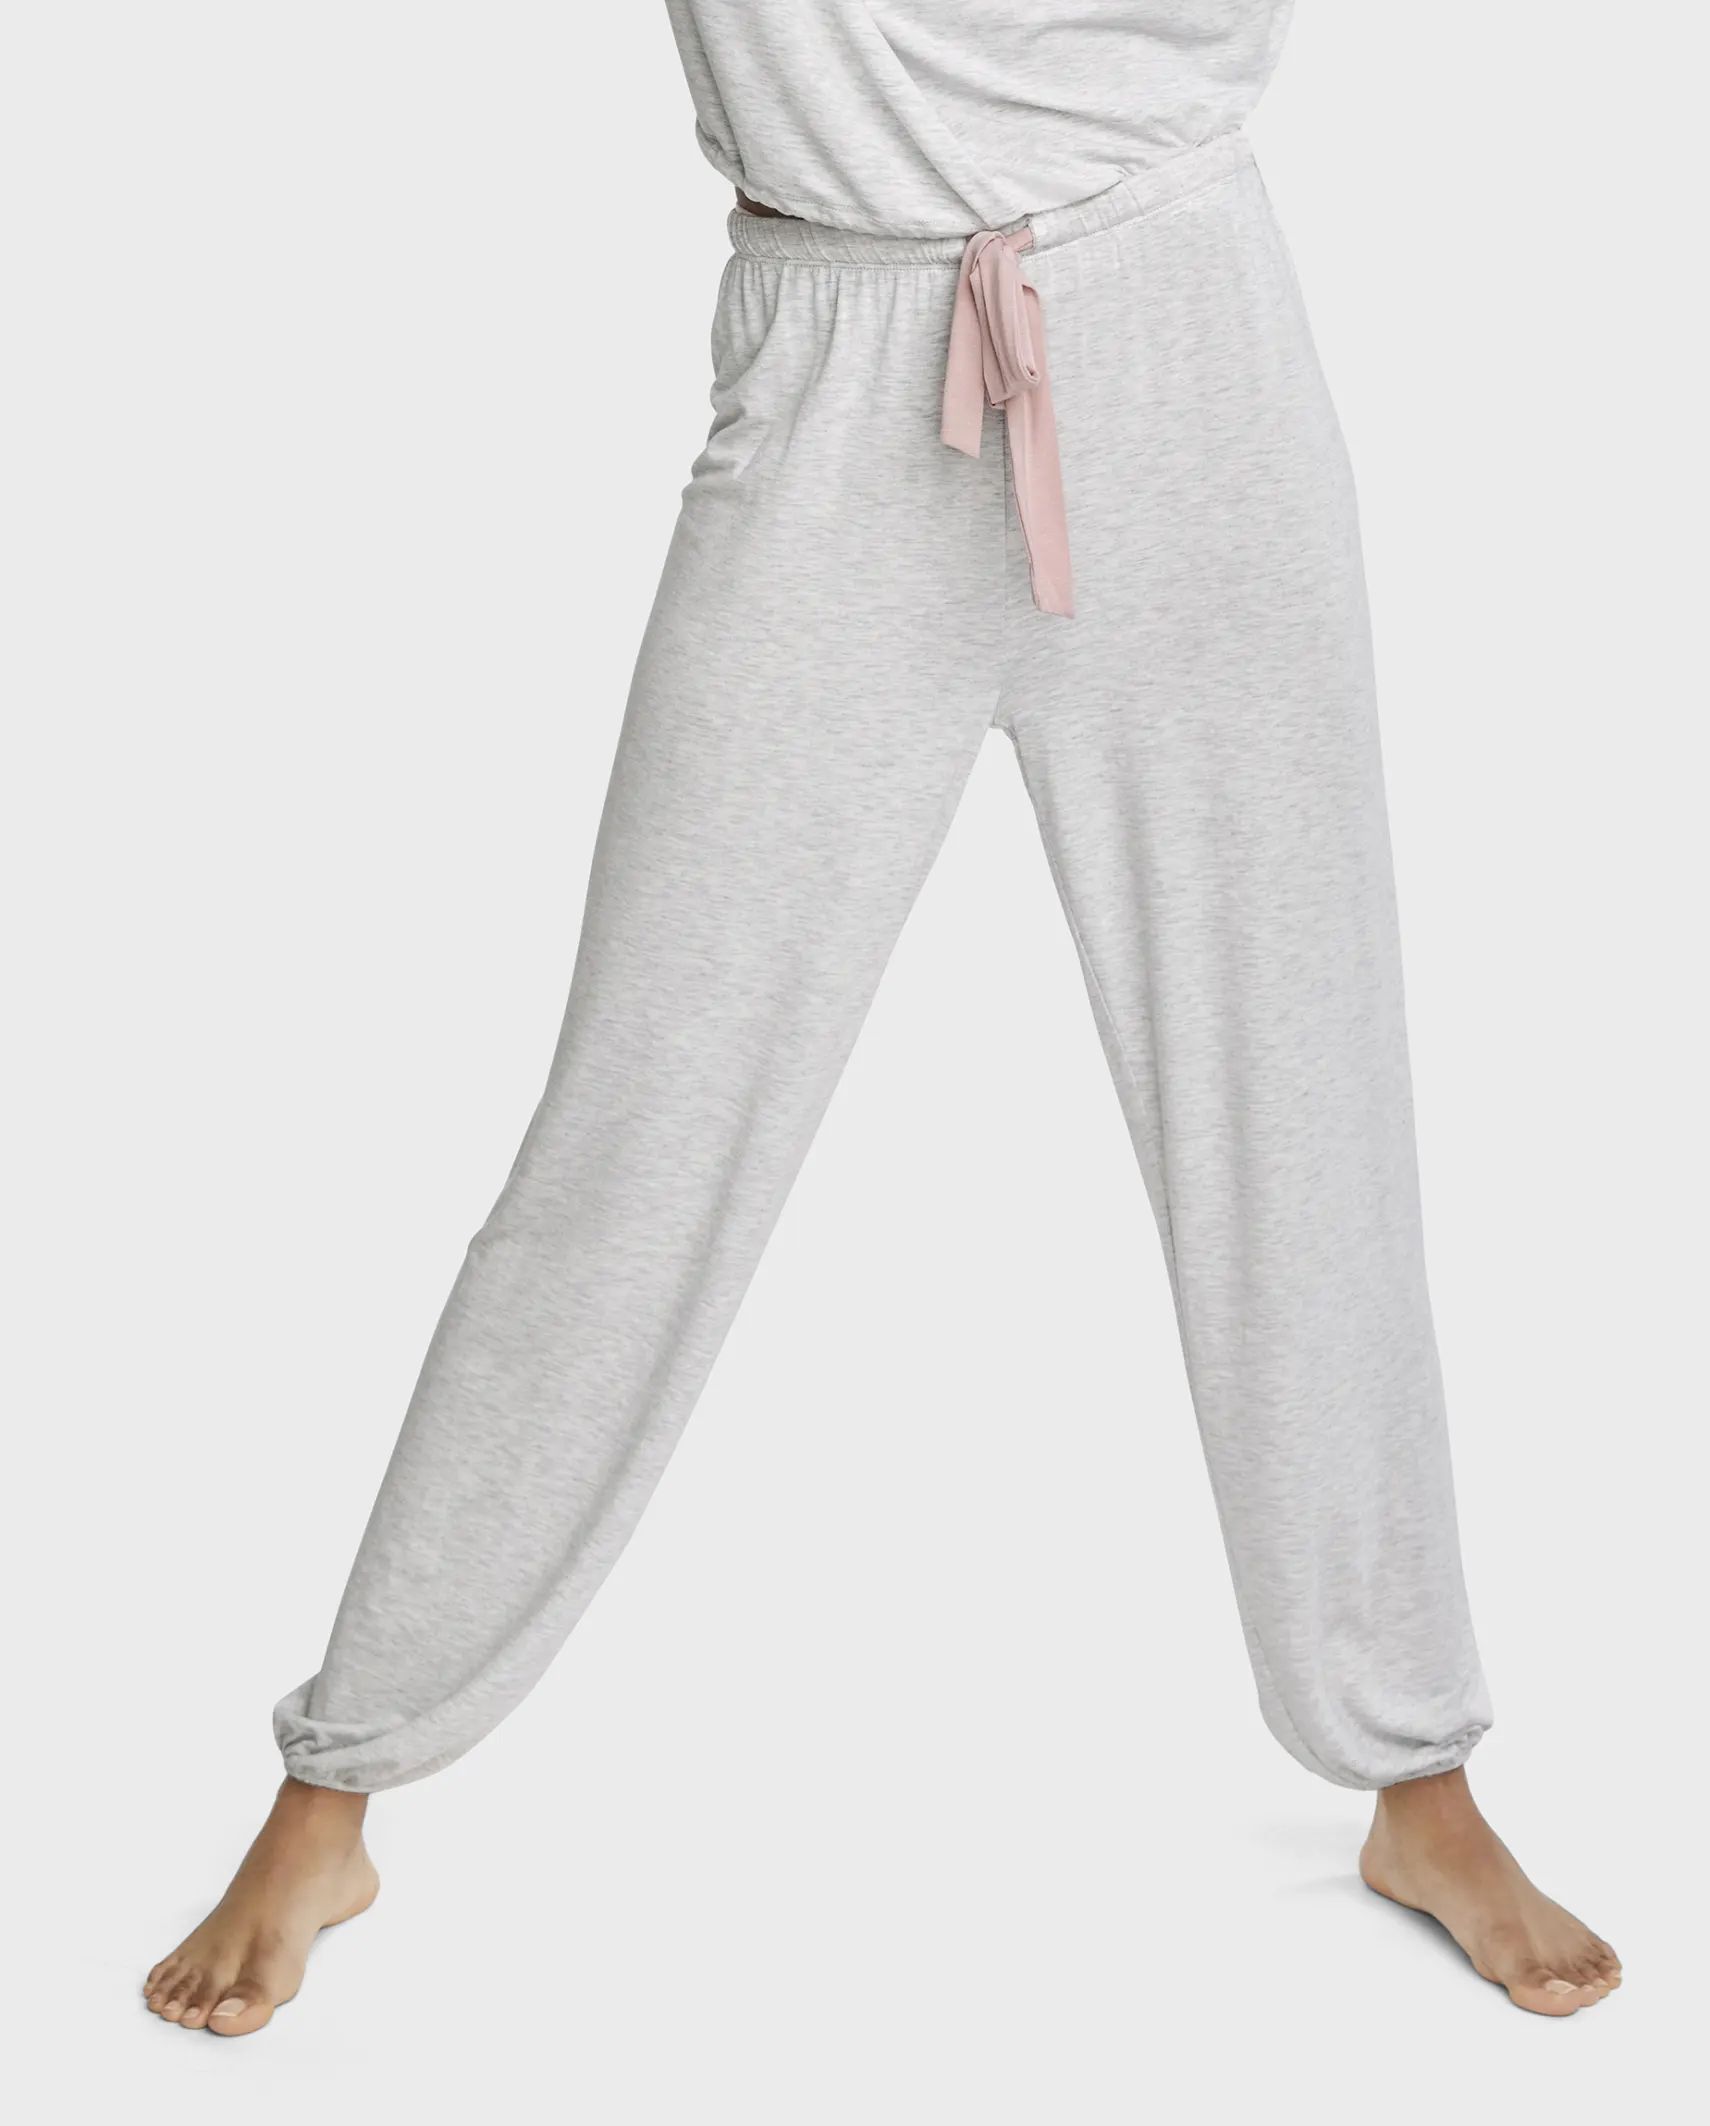 Womens Tie-Front Modal Pajama Pants - h/t lunar | PJ Place